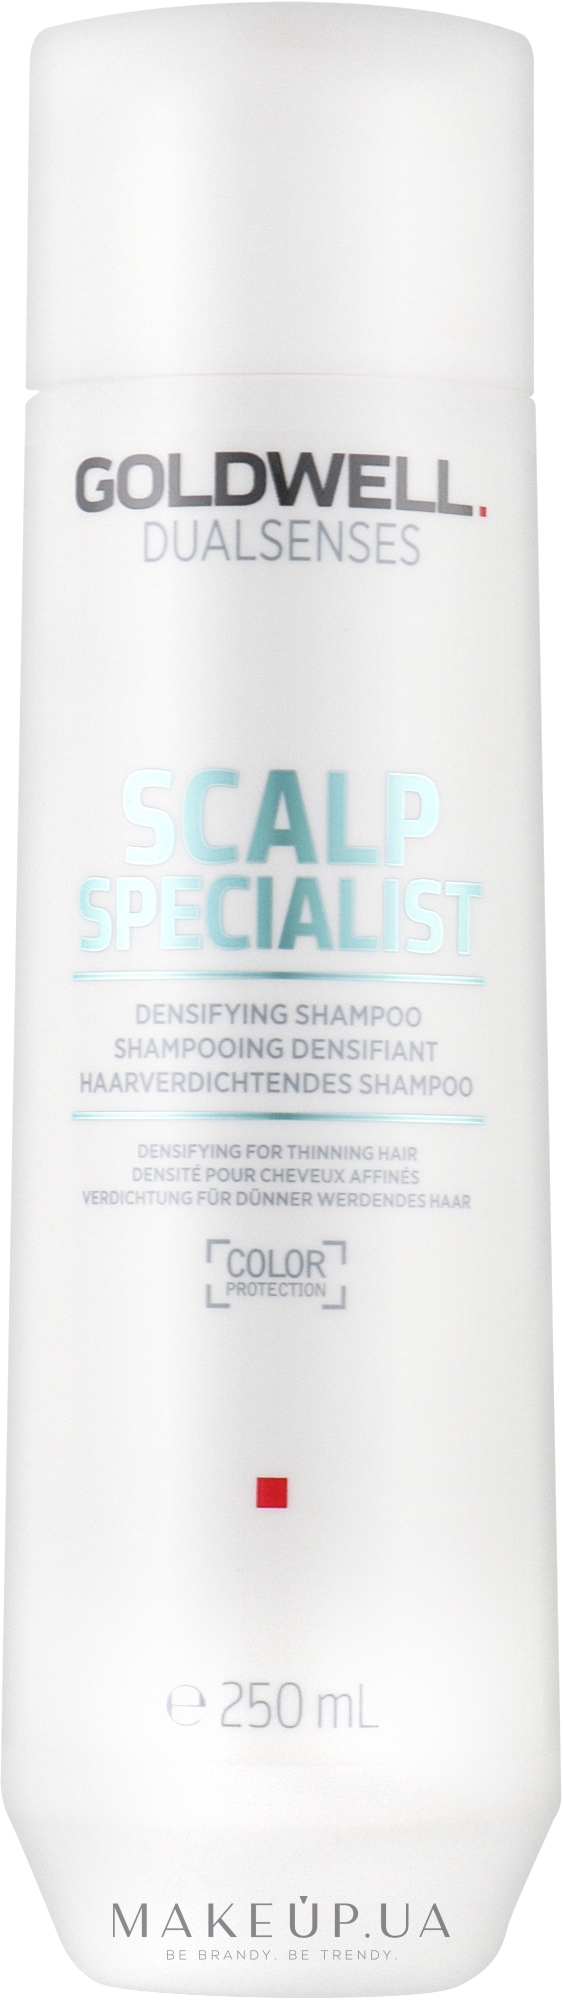 Укрепляющий шампунь для тонких волос - Goldwell Dualsenses Scalp Specialist Densifying Shampoo — фото 250ml